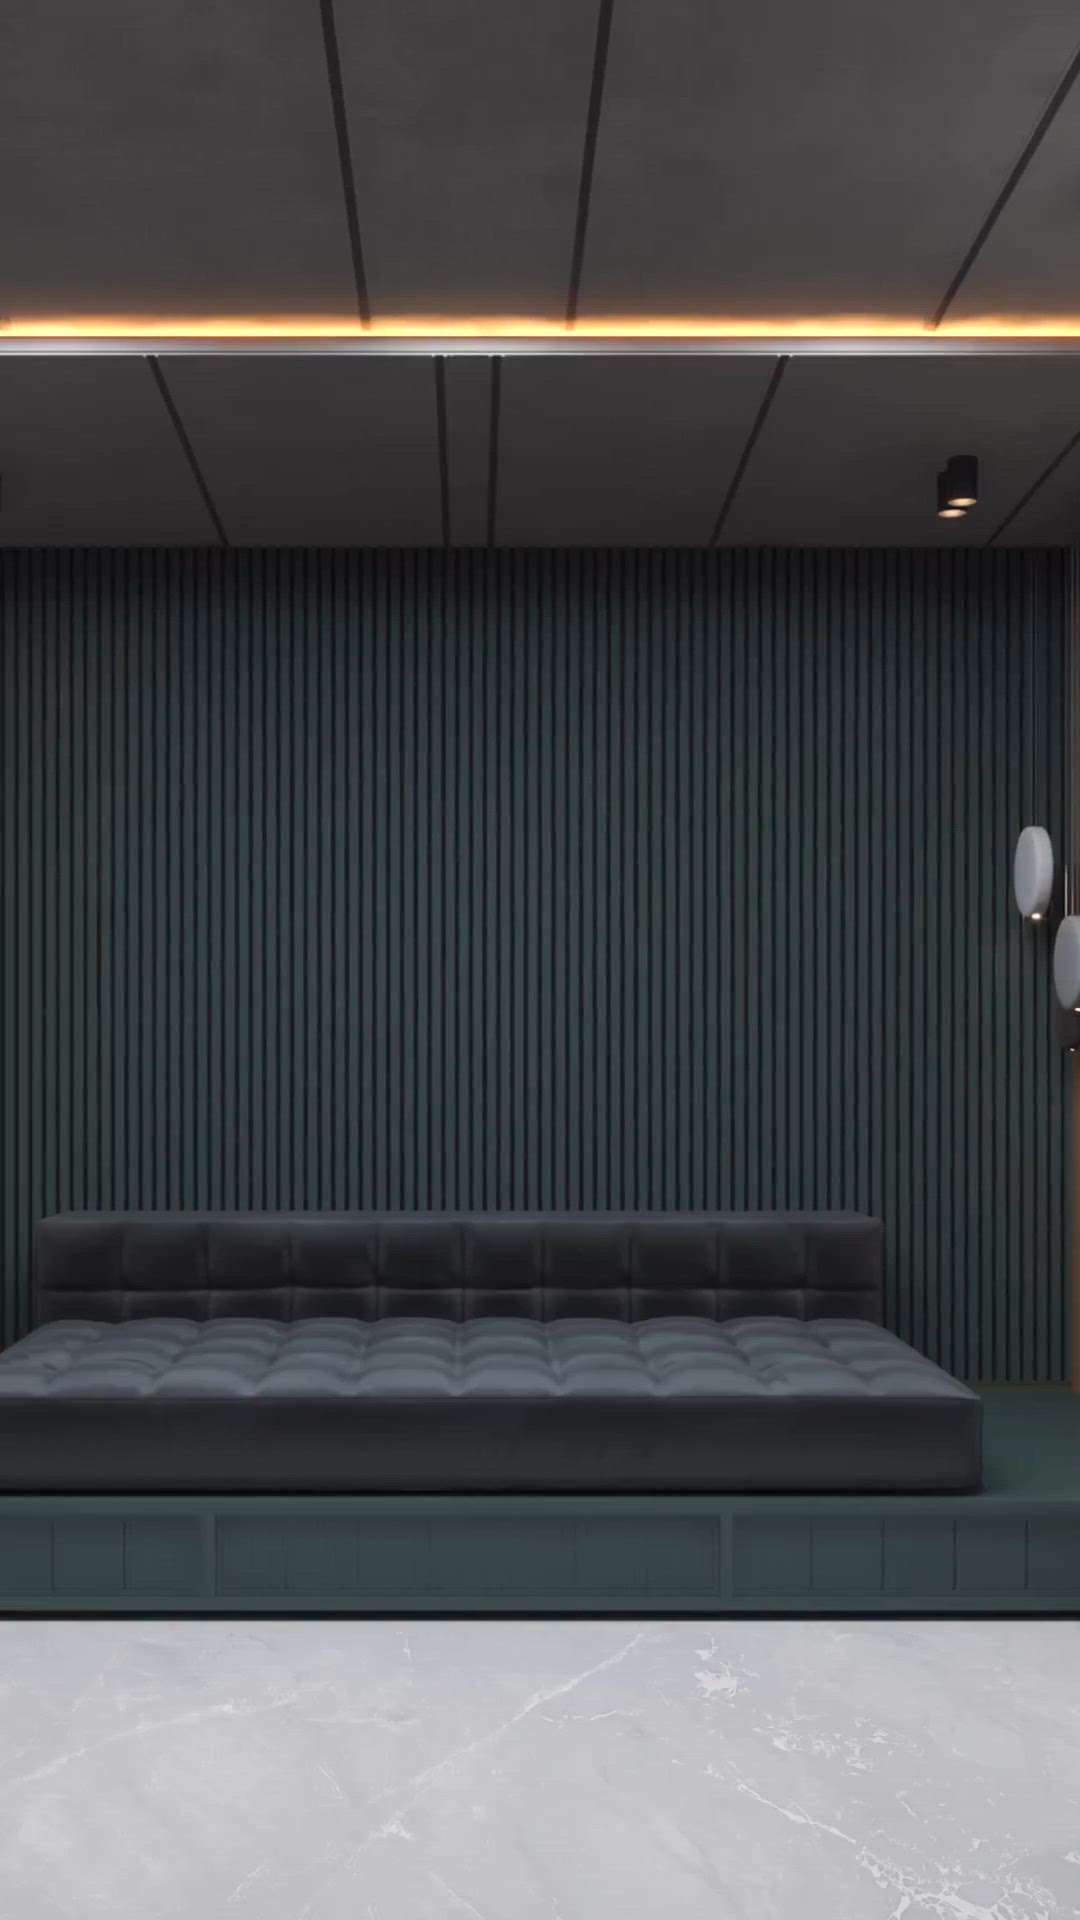 Amezing Theatre Room concept
😍😍
 #theatreinterior 
#hometheaterdesign